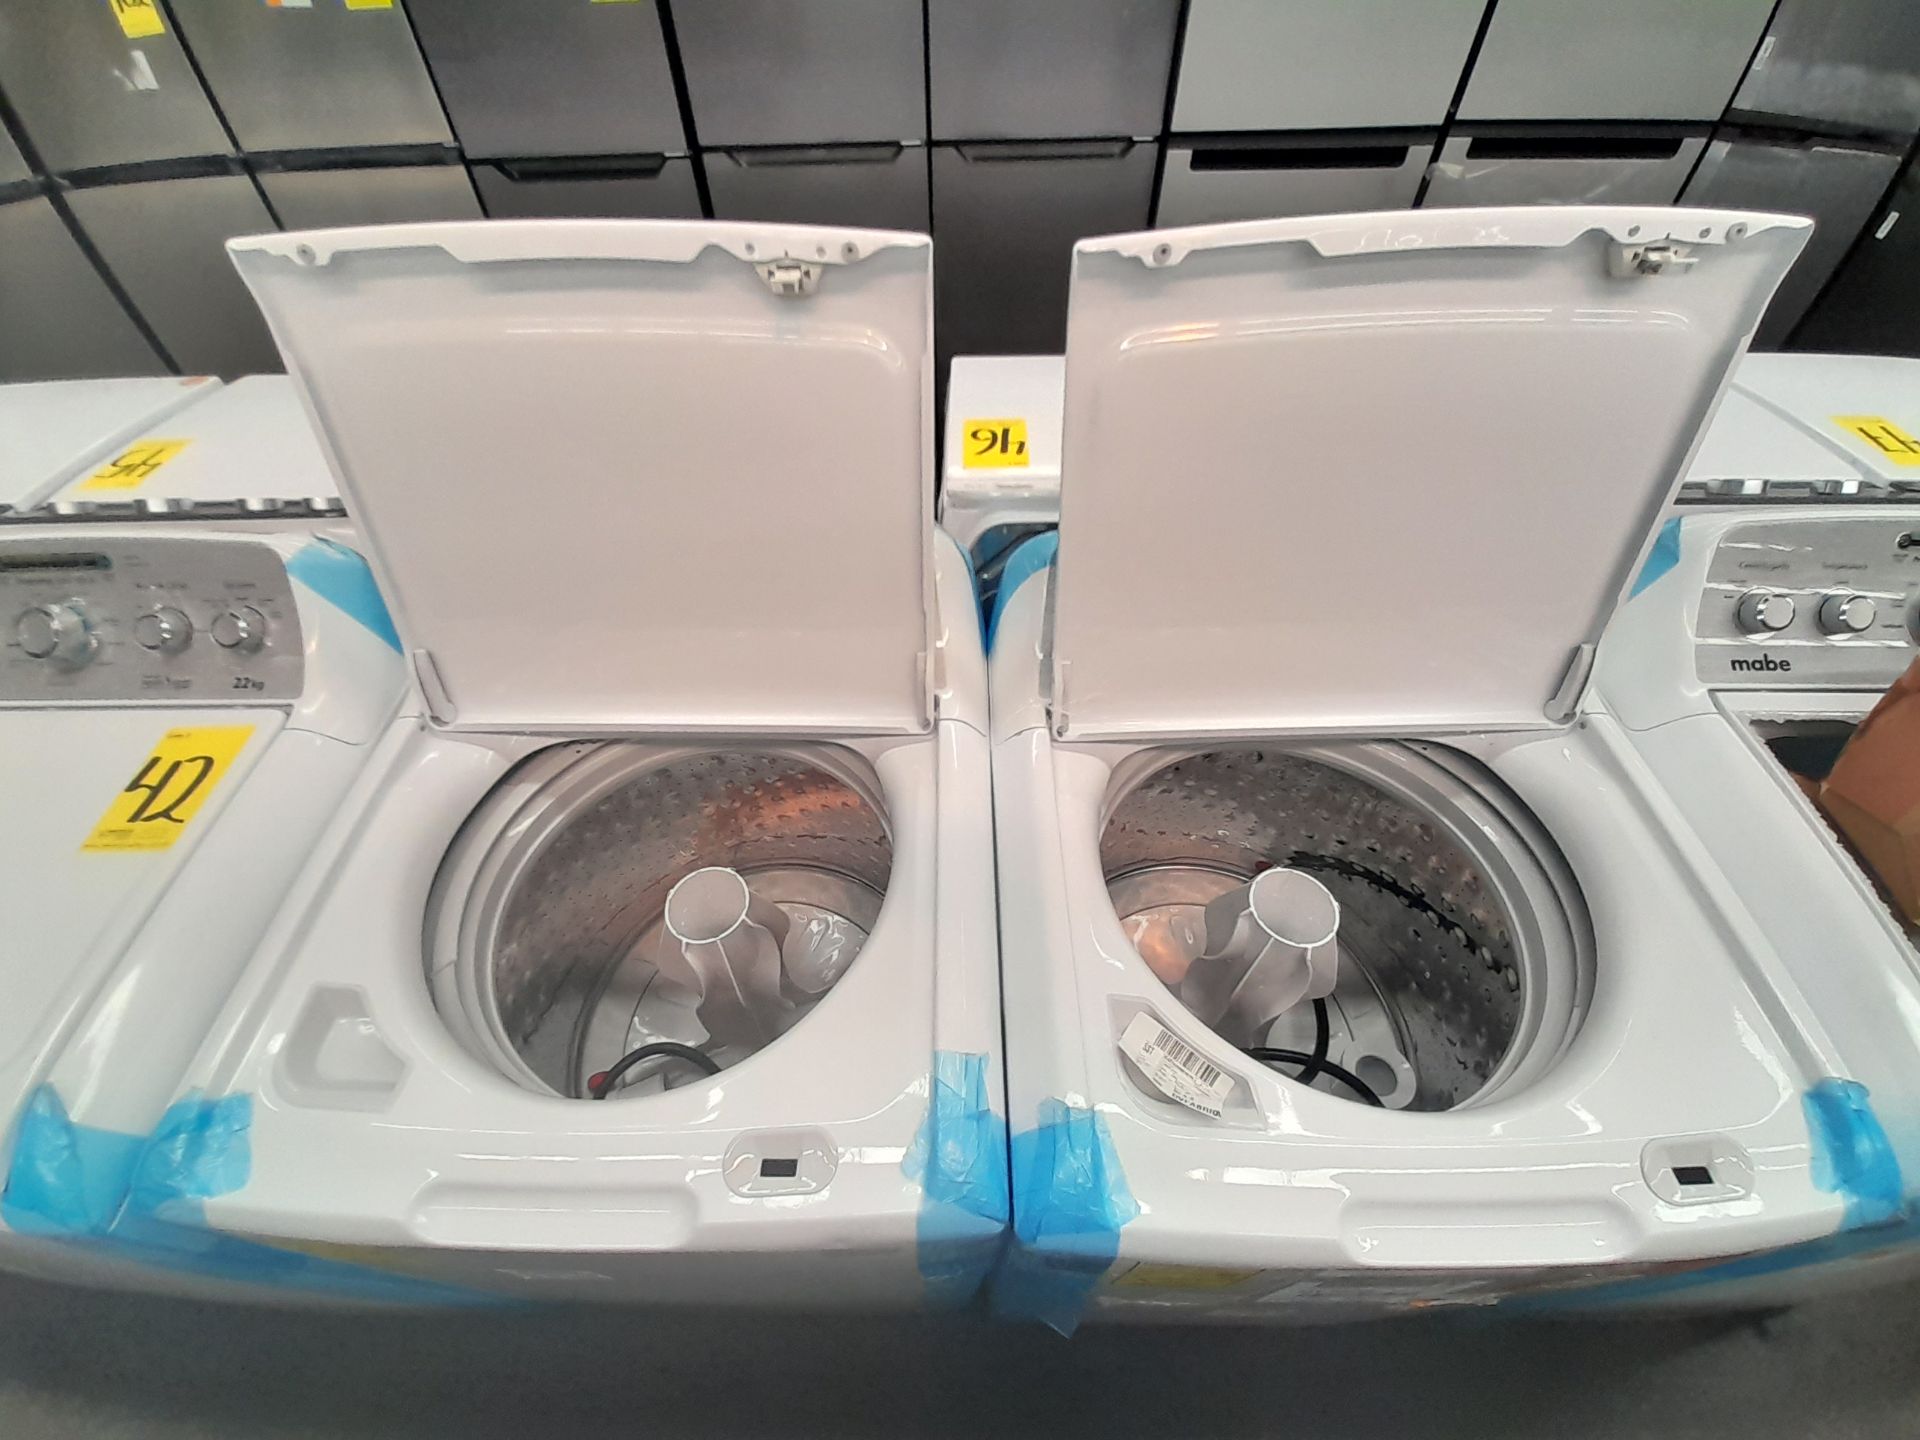 Lote de 2 lavadoras contiene: 1 lavadora de 22 KG, Marca MABE, Modelo LMA72215CBAB02, Serie S30259, - Image 5 of 6